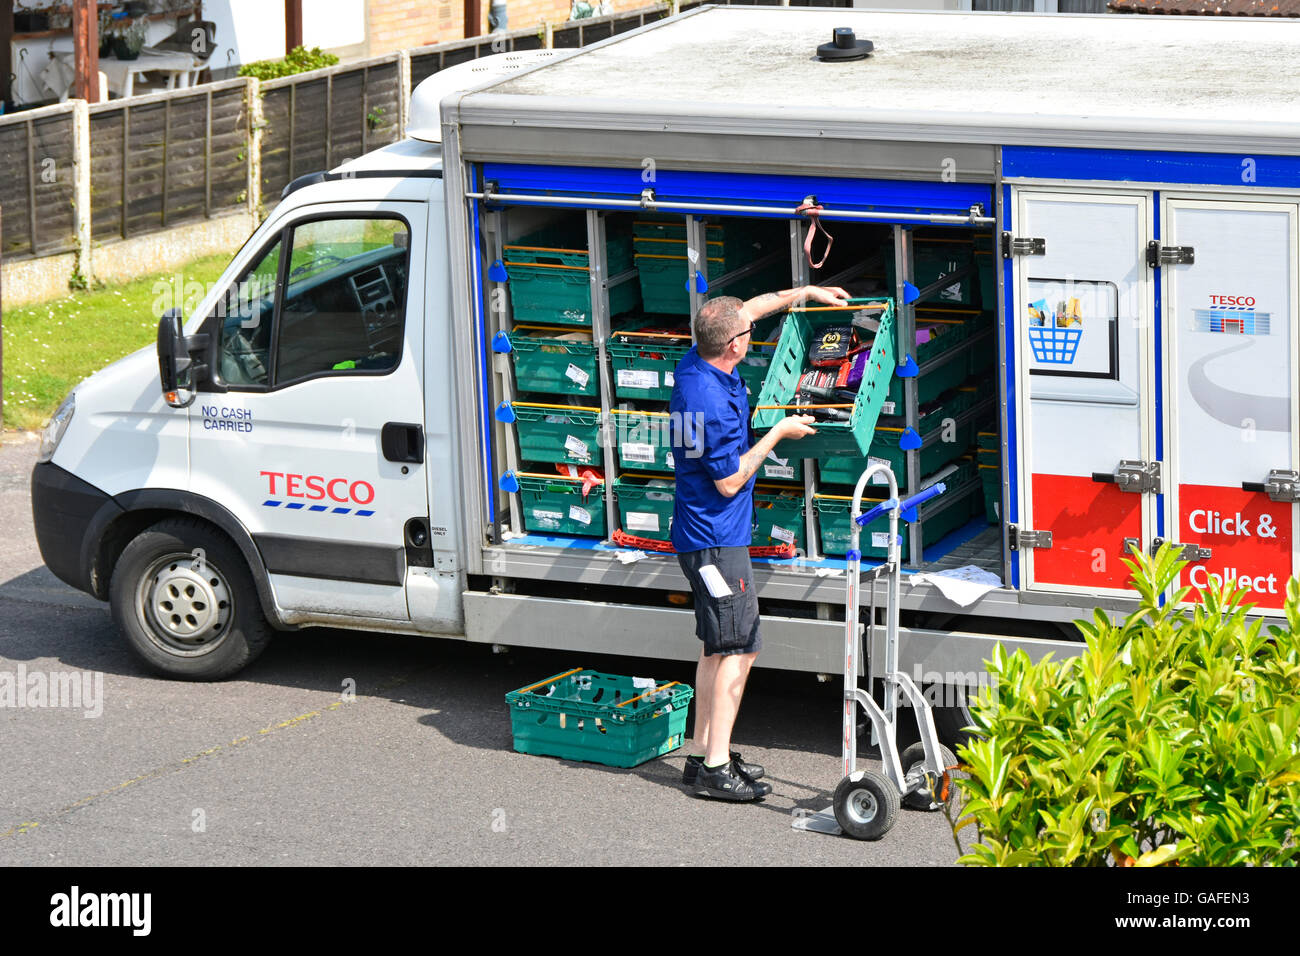 Chauffeur de minibus de livraison à domicile au travail déchargeant des provisions dans un chariot chez les clients en ligne du supermarché Tesco dans la rue résidentielle Angleterre Royaume-Uni Banque D'Images